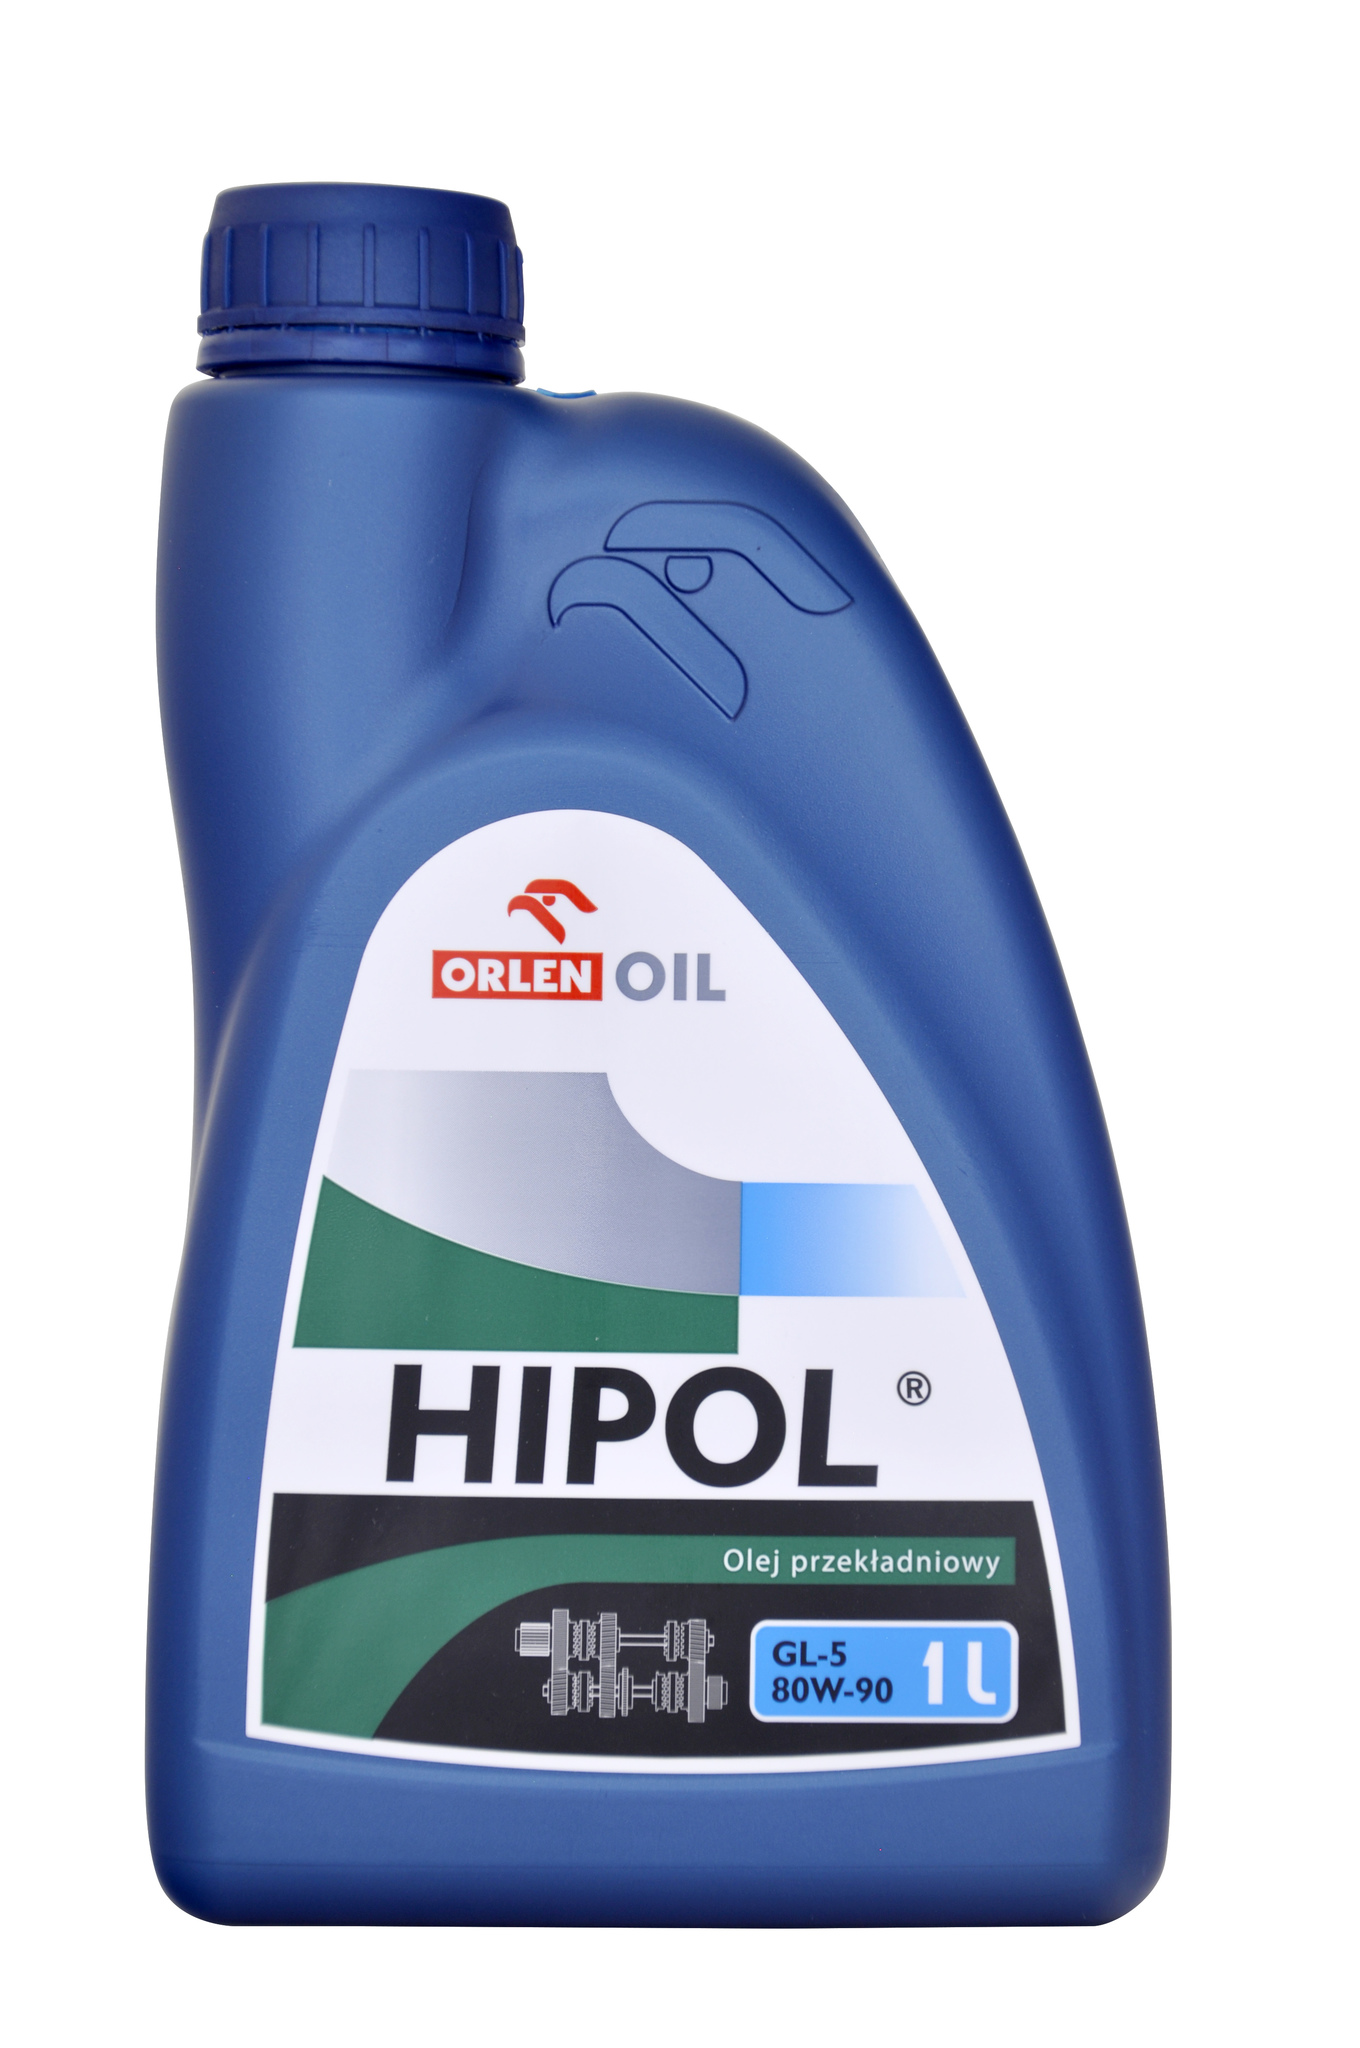 Купить трансмиссионное масло для МКПП Orlen Oil Hipol 80W90 GL5, цена в .